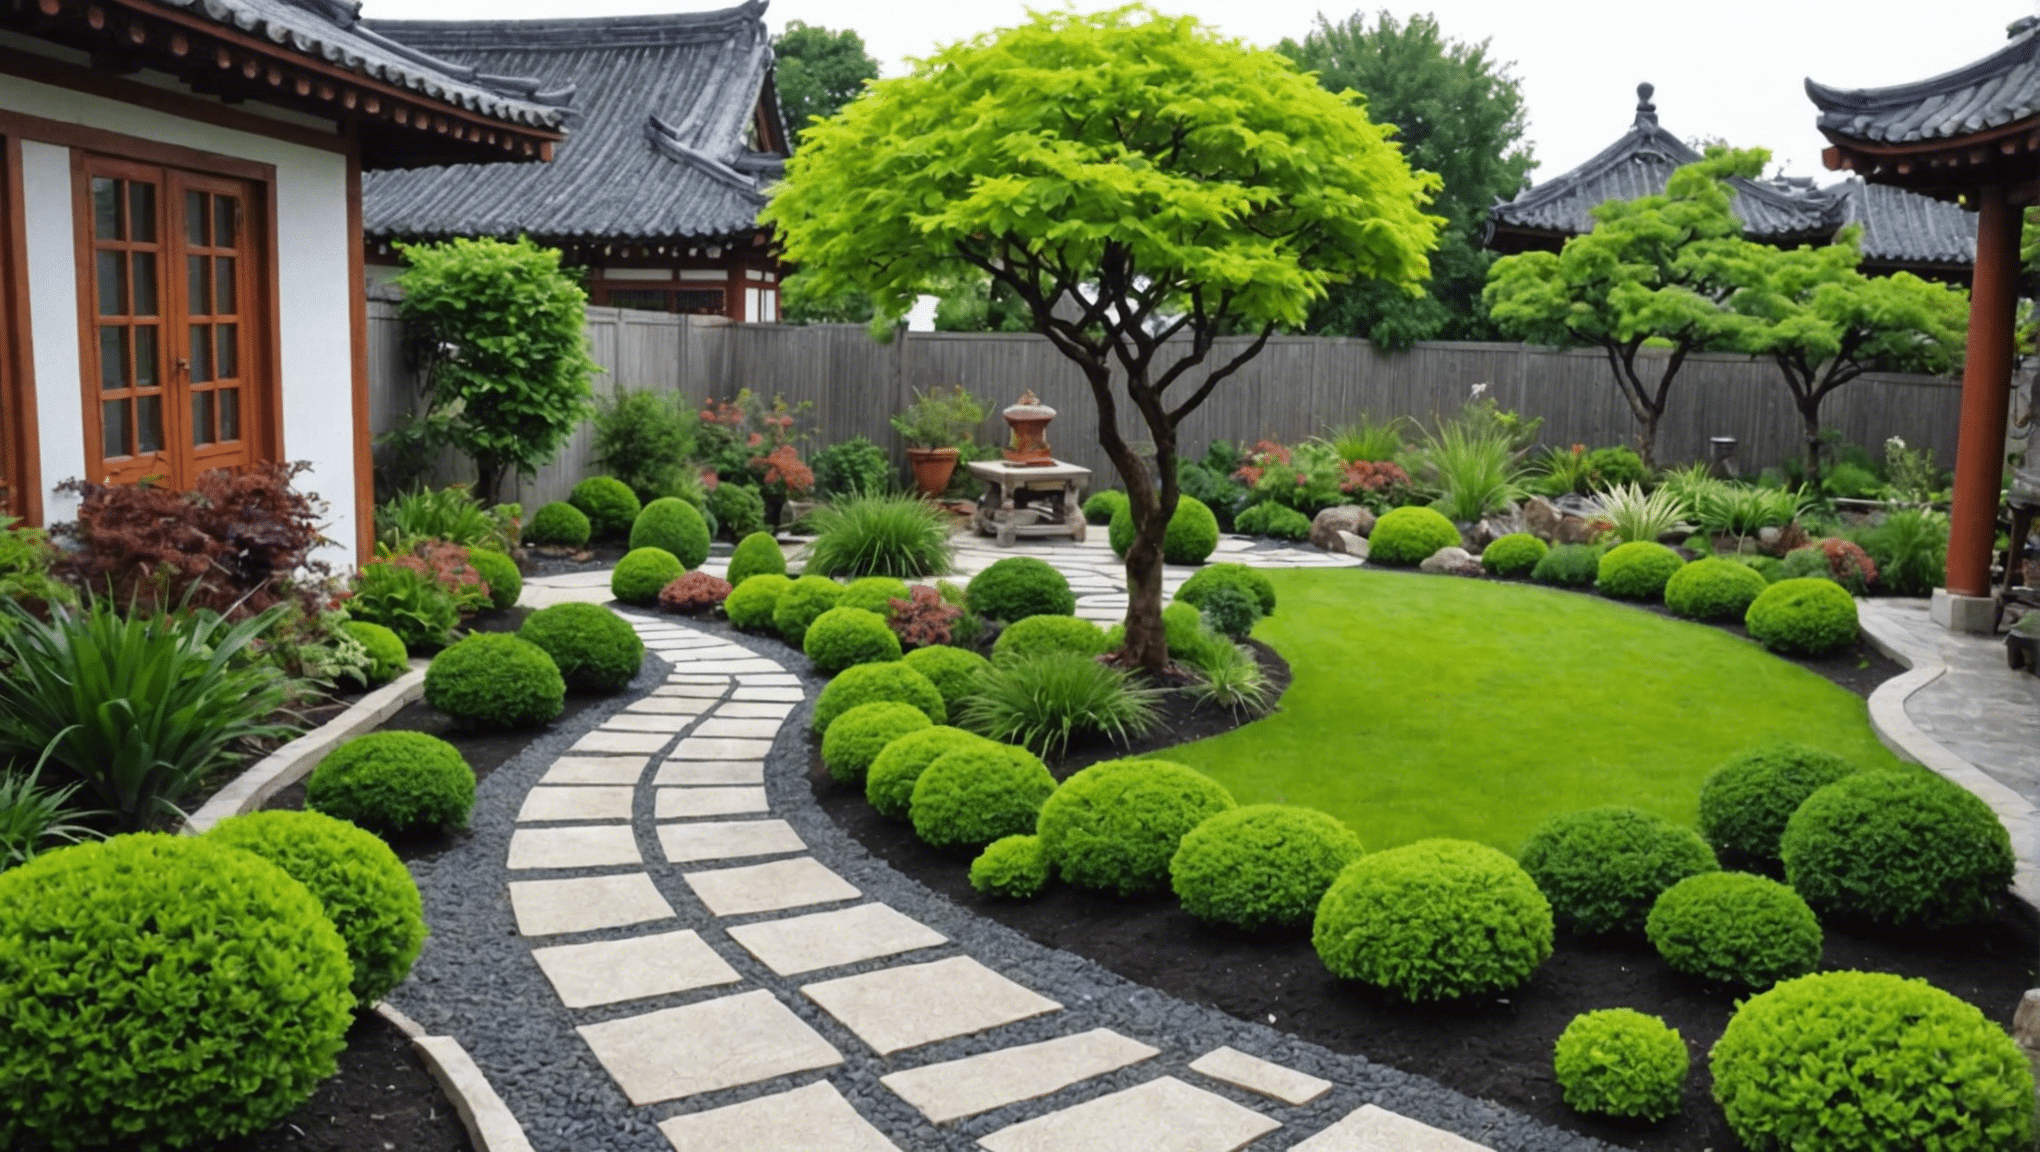 scopri idee di giardinaggio asiatiche creative e stimolanti per il tuo spazio esterno con i consigli e l'ispirazione dei nostri esperti. dai tradizionali giardini giapponesi ai moderni design zen, trova l'ispirazione perfetta per la tua oasi all'aperto.